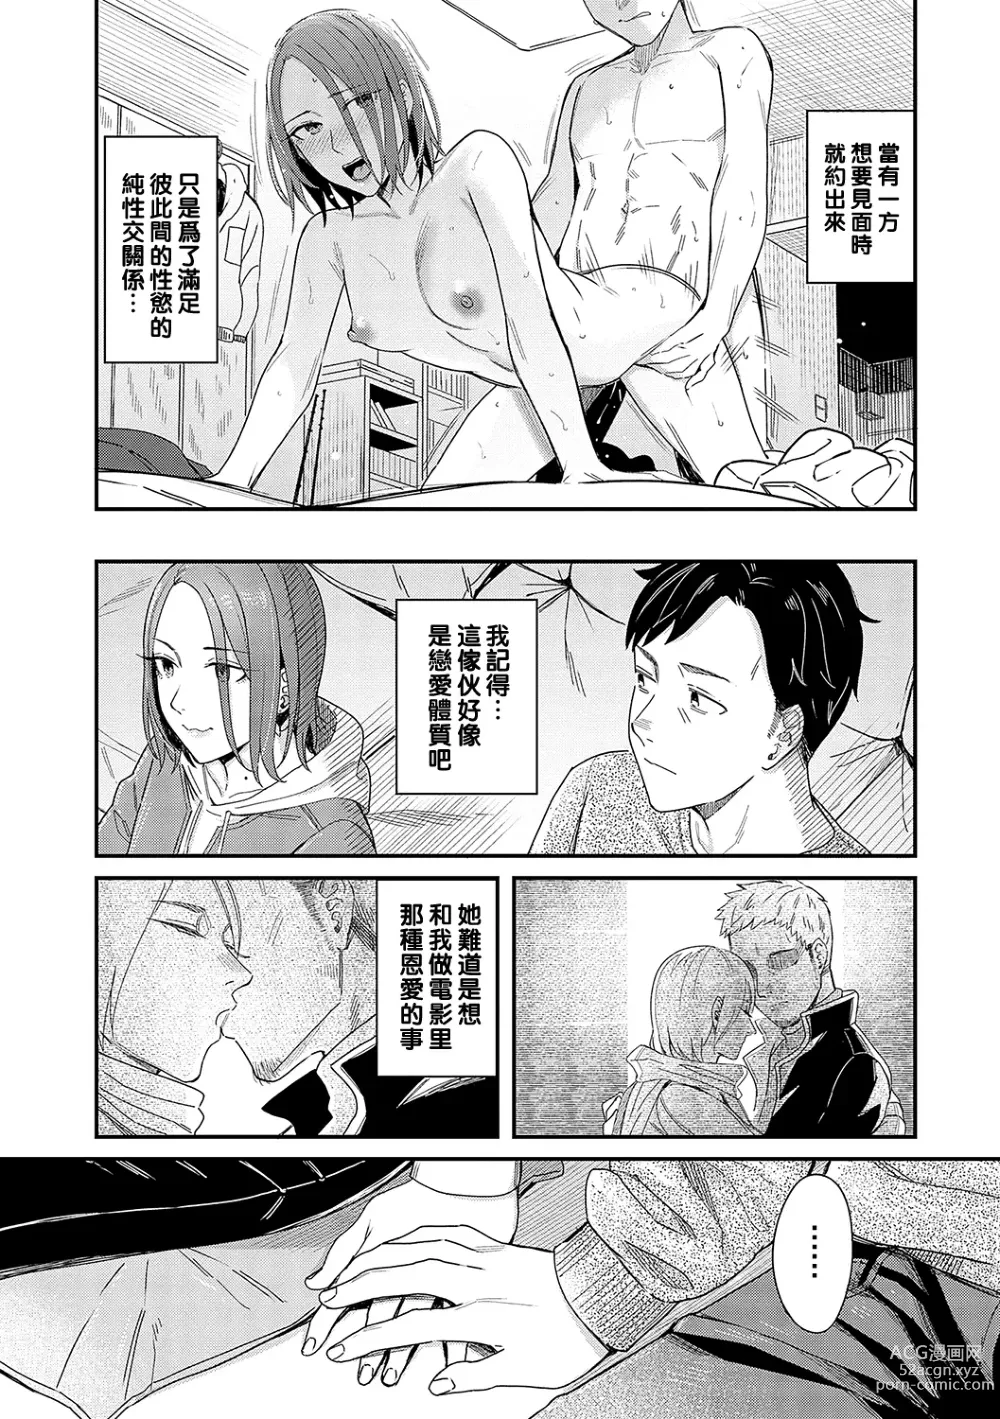 Page 9 of manga Kudaranai Renai Eiga no You ni... - Like a crappy romance movie...